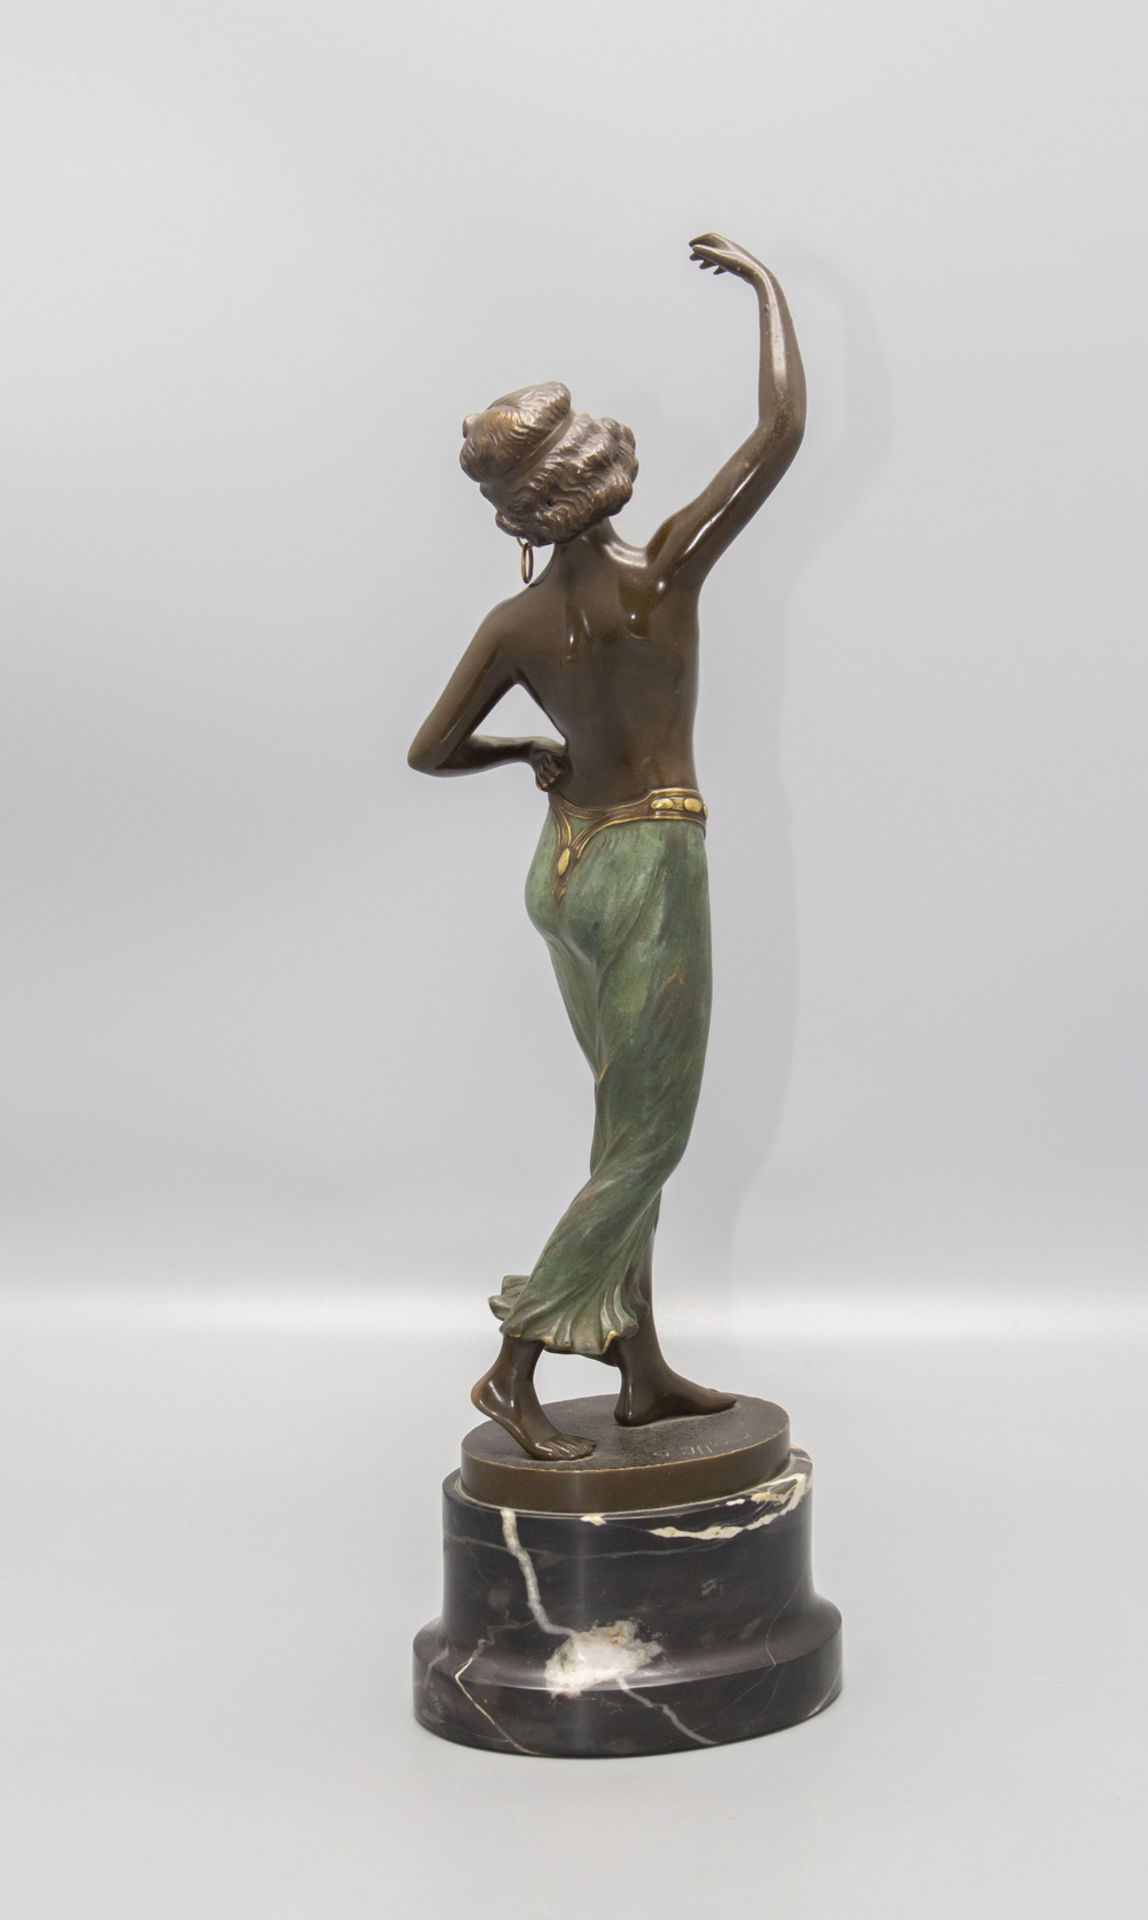 Franz IFFLAND (1862-1935), Bronzeplastik 'Odaliske' / A bronze sculpture 'Odalisque', um 1920 - Image 3 of 5